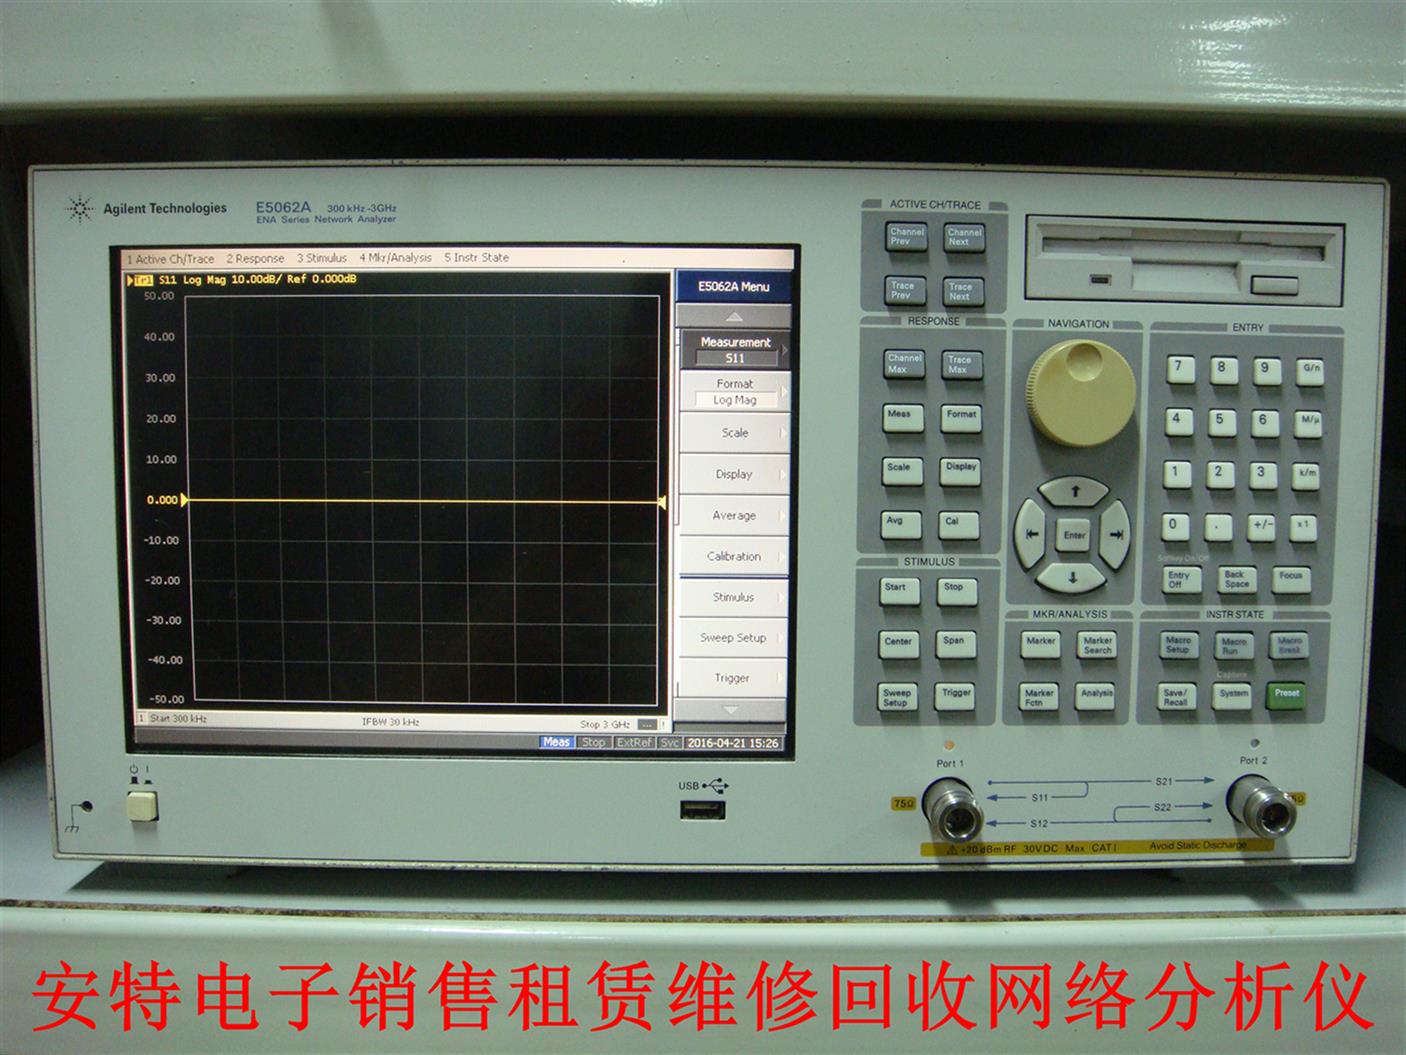 深圳E5062A維修 5061B 質量保證 全國技術支持